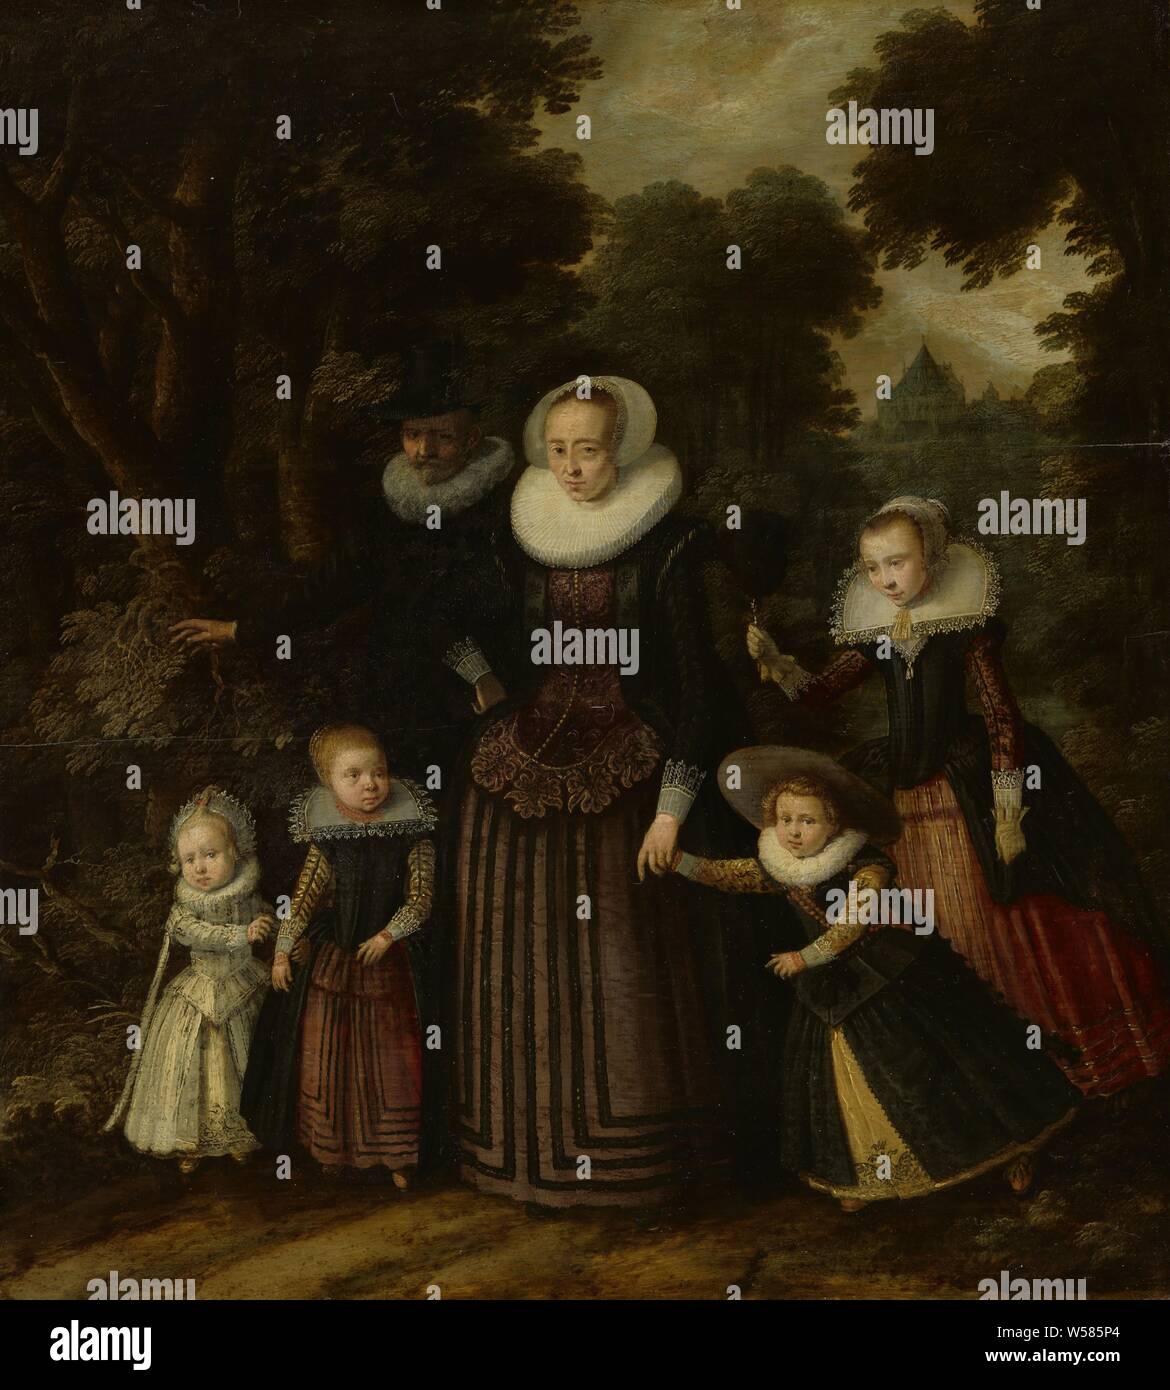 Portrait d'un couple et quatre enfants, portrait de famille d'un couple avec quatre enfants debout à leurs pieds, au milieu des arbres d'une forêt ou d'un parc derrière une maison de campagne. La fille aînée de droite contient jusqu'a feather fan., anonyme, Nederlanden, ch. 1620 - c. 1625, tableau de bord, de la peinture à l'huile (peinture), support : h 51,2 cm × w 46,3 cm frame : H 67,5 cm × 63 cm taille de la vue : h 50,4 cm × w 45,5 cm Banque D'Images